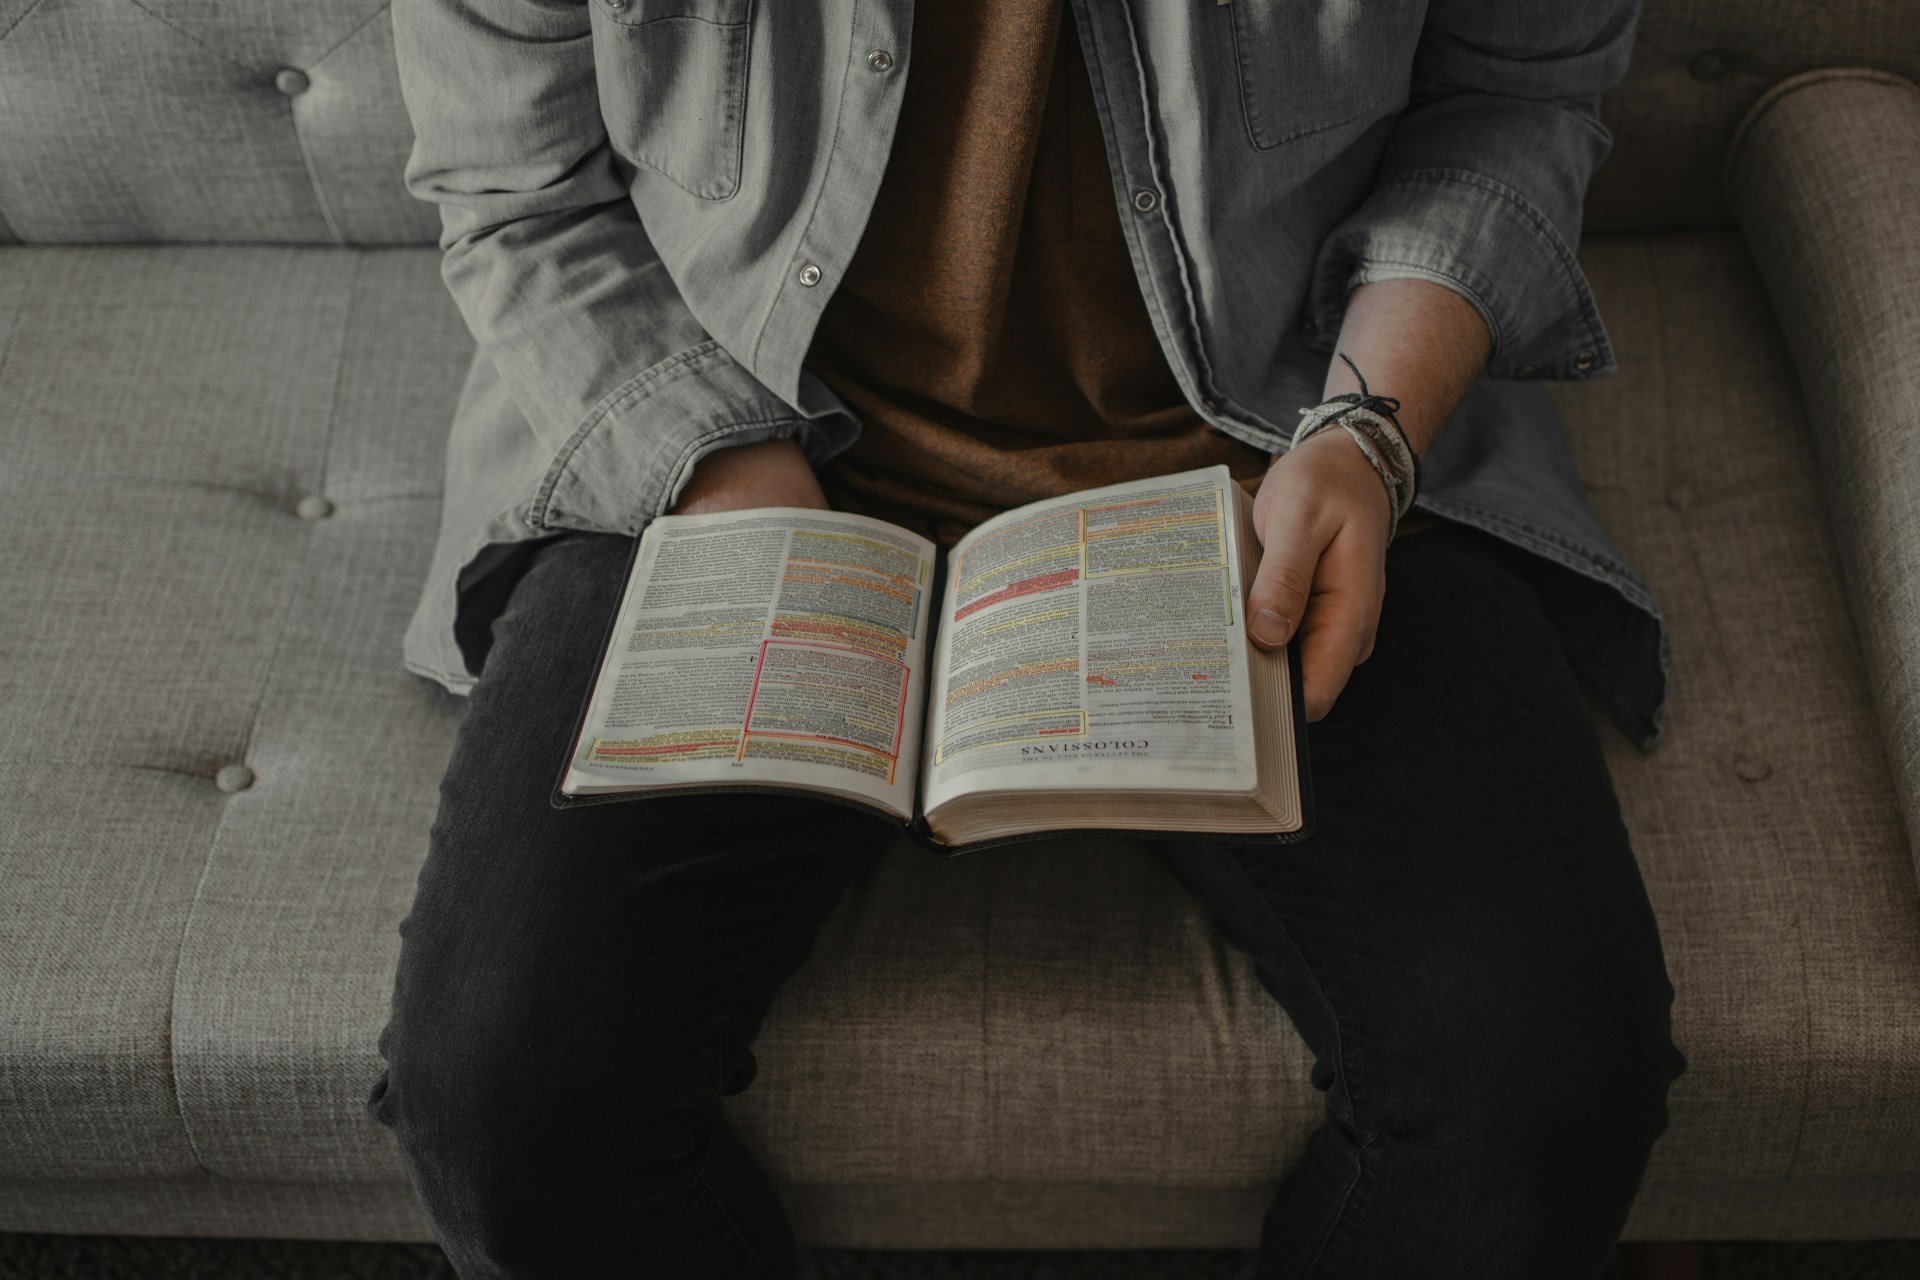 Apenas cristãos evangélicos leem a Bíblia regularmente na Alemanha, revela pesquisa